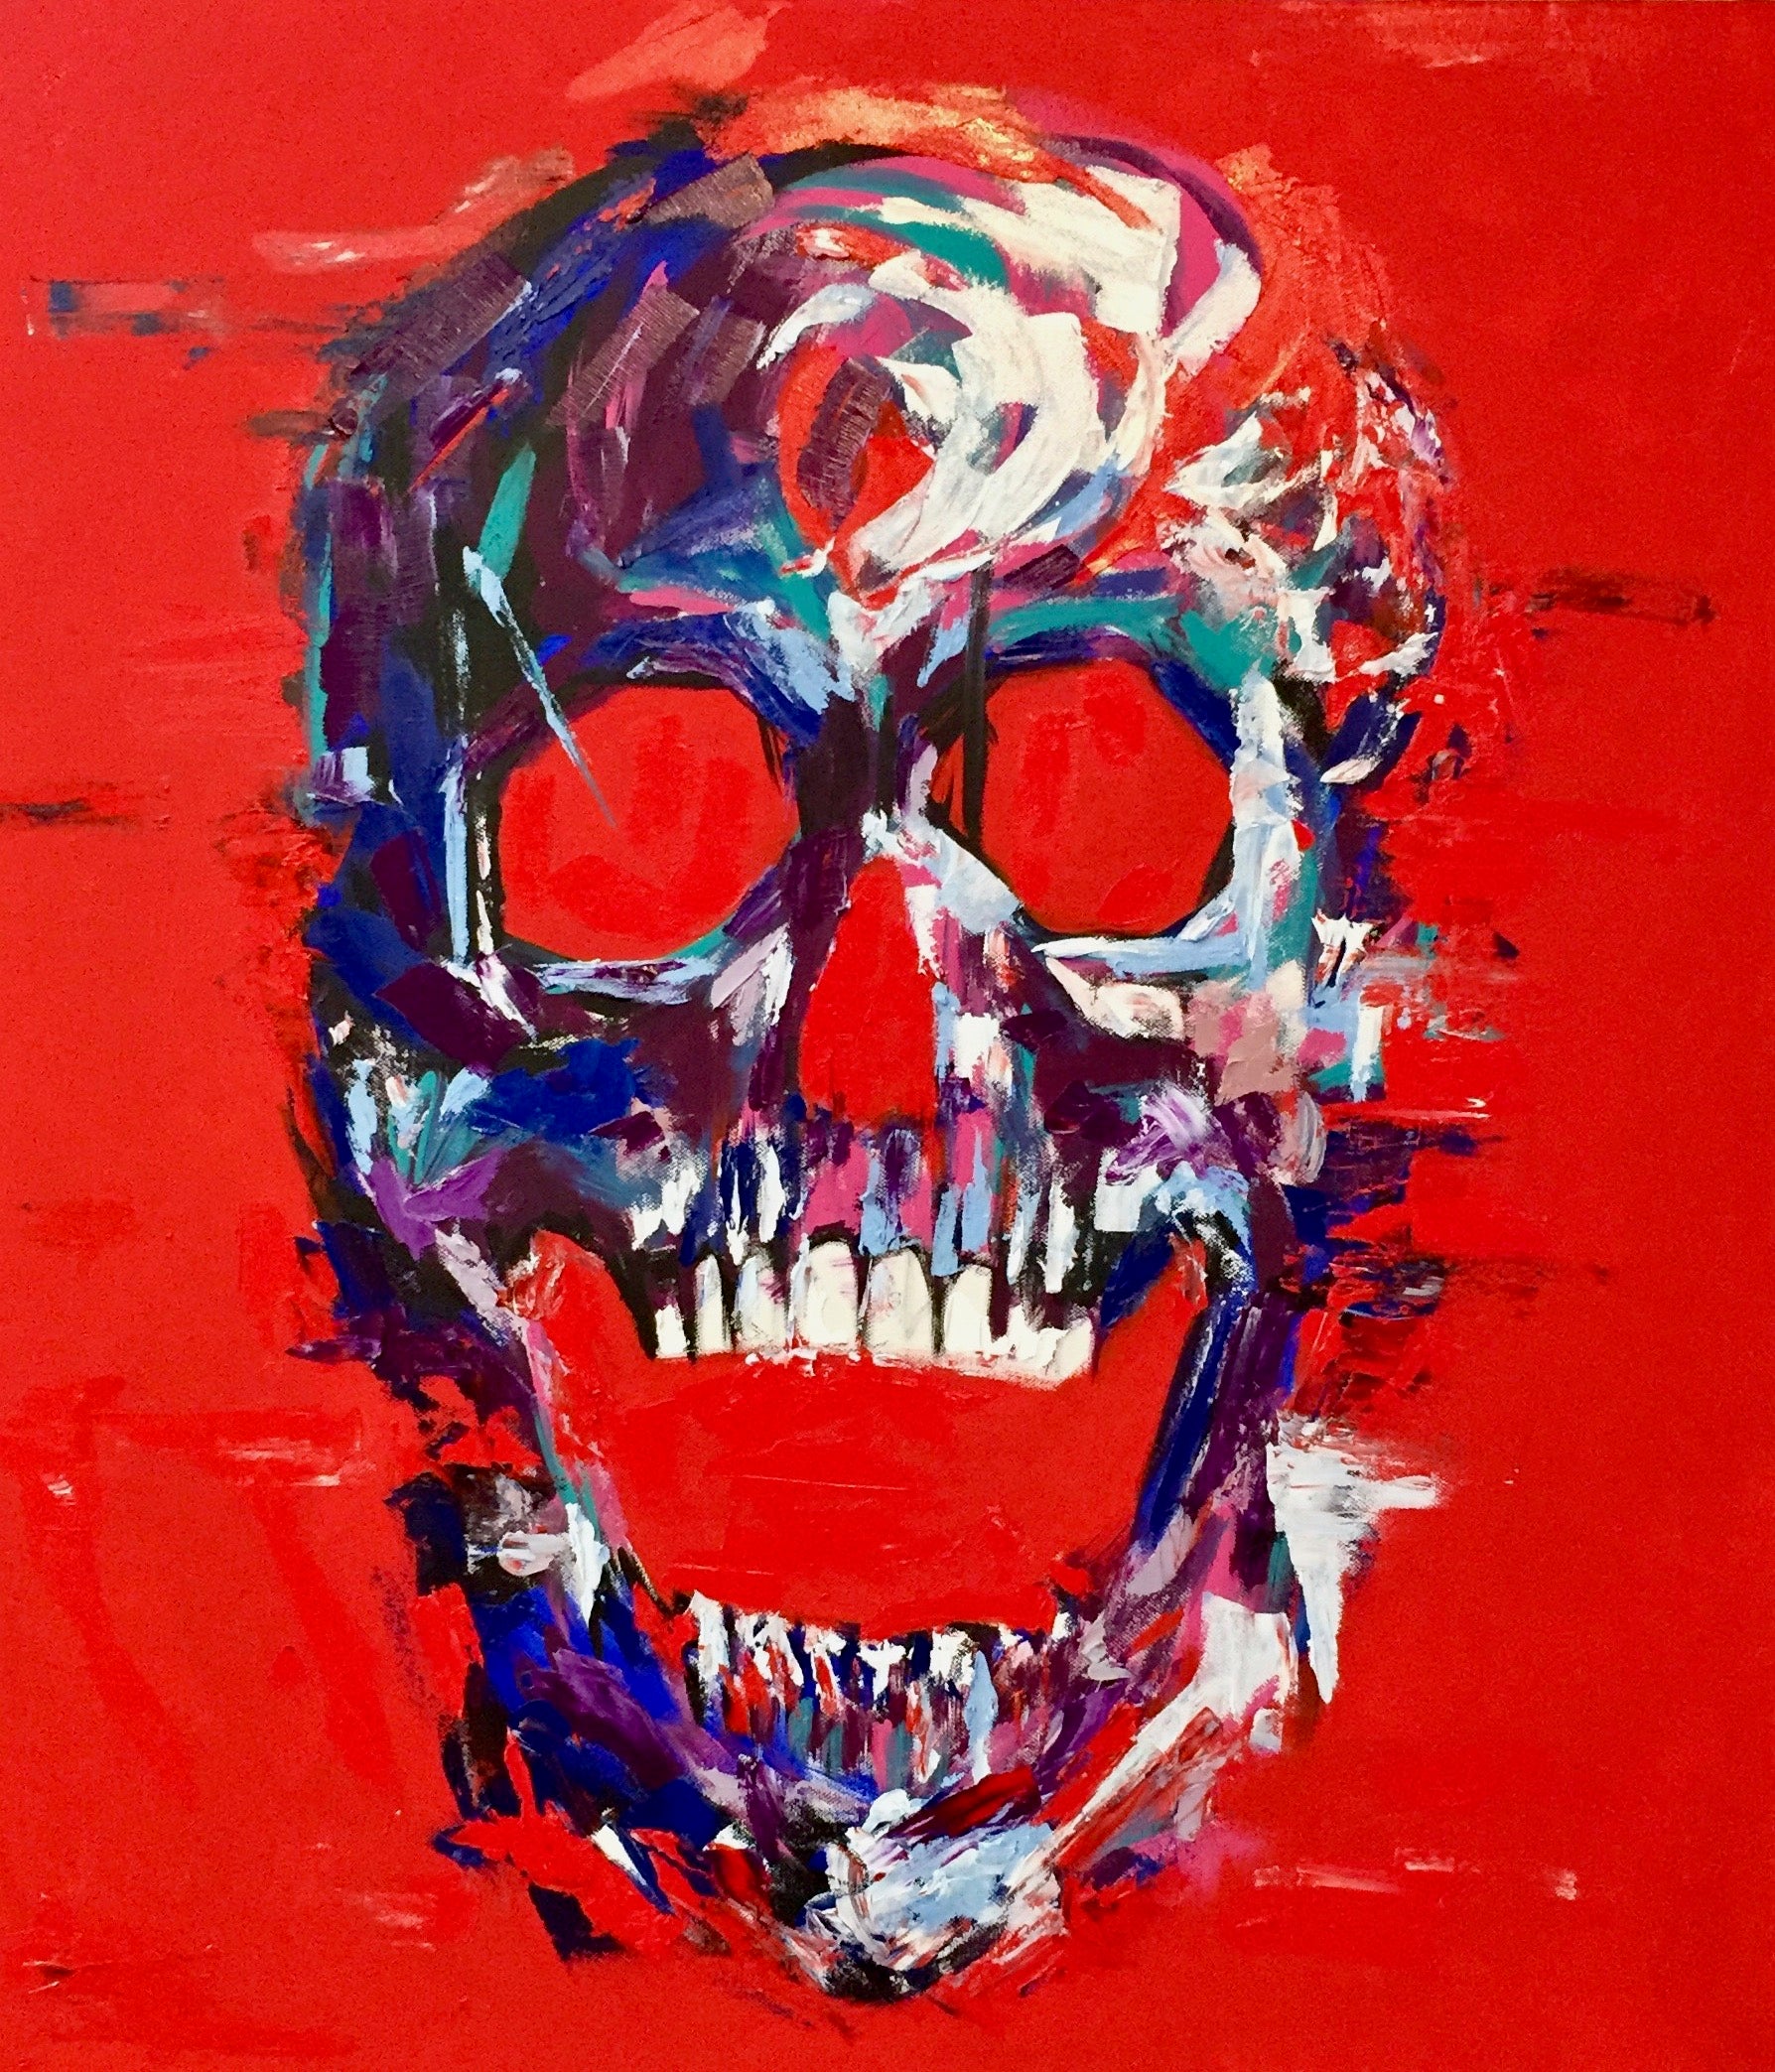 Print Red Skull